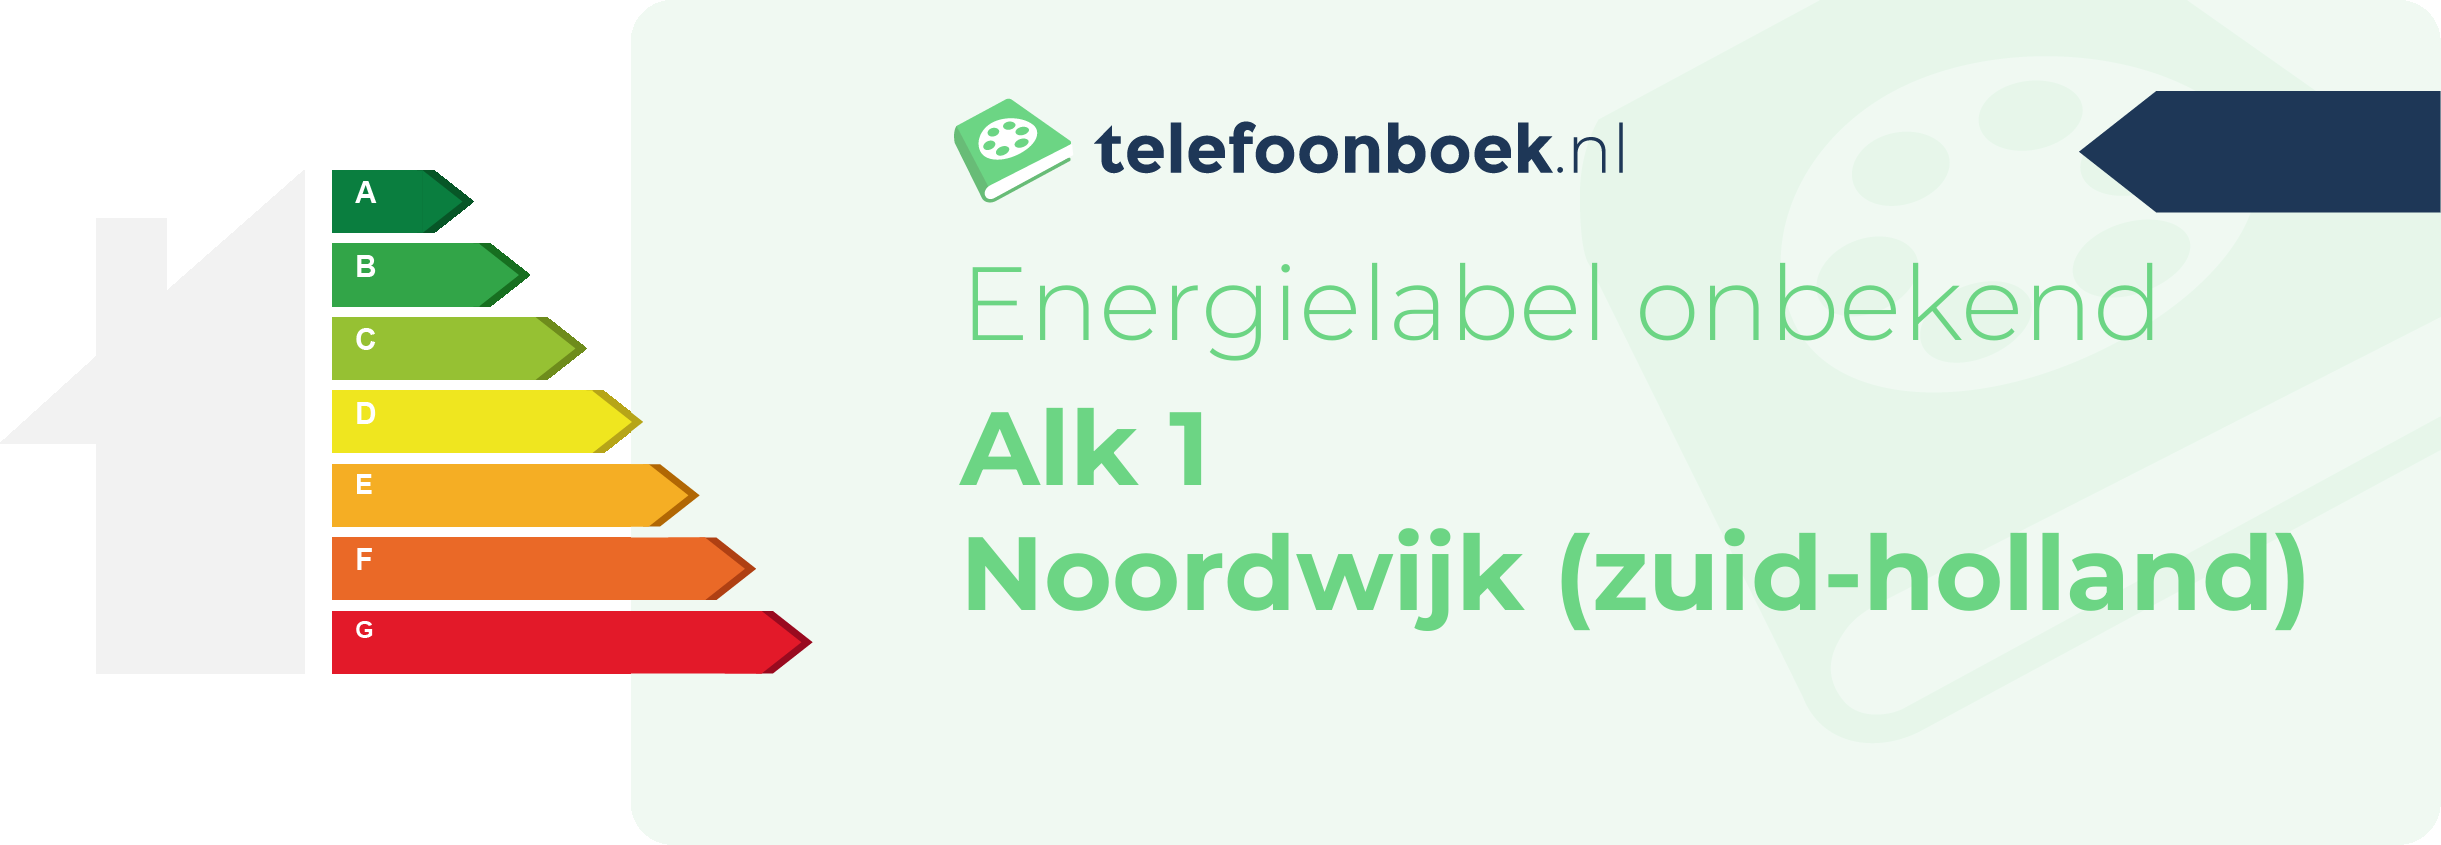 Energielabel Alk 1 Noordwijk (Zuid-Holland)